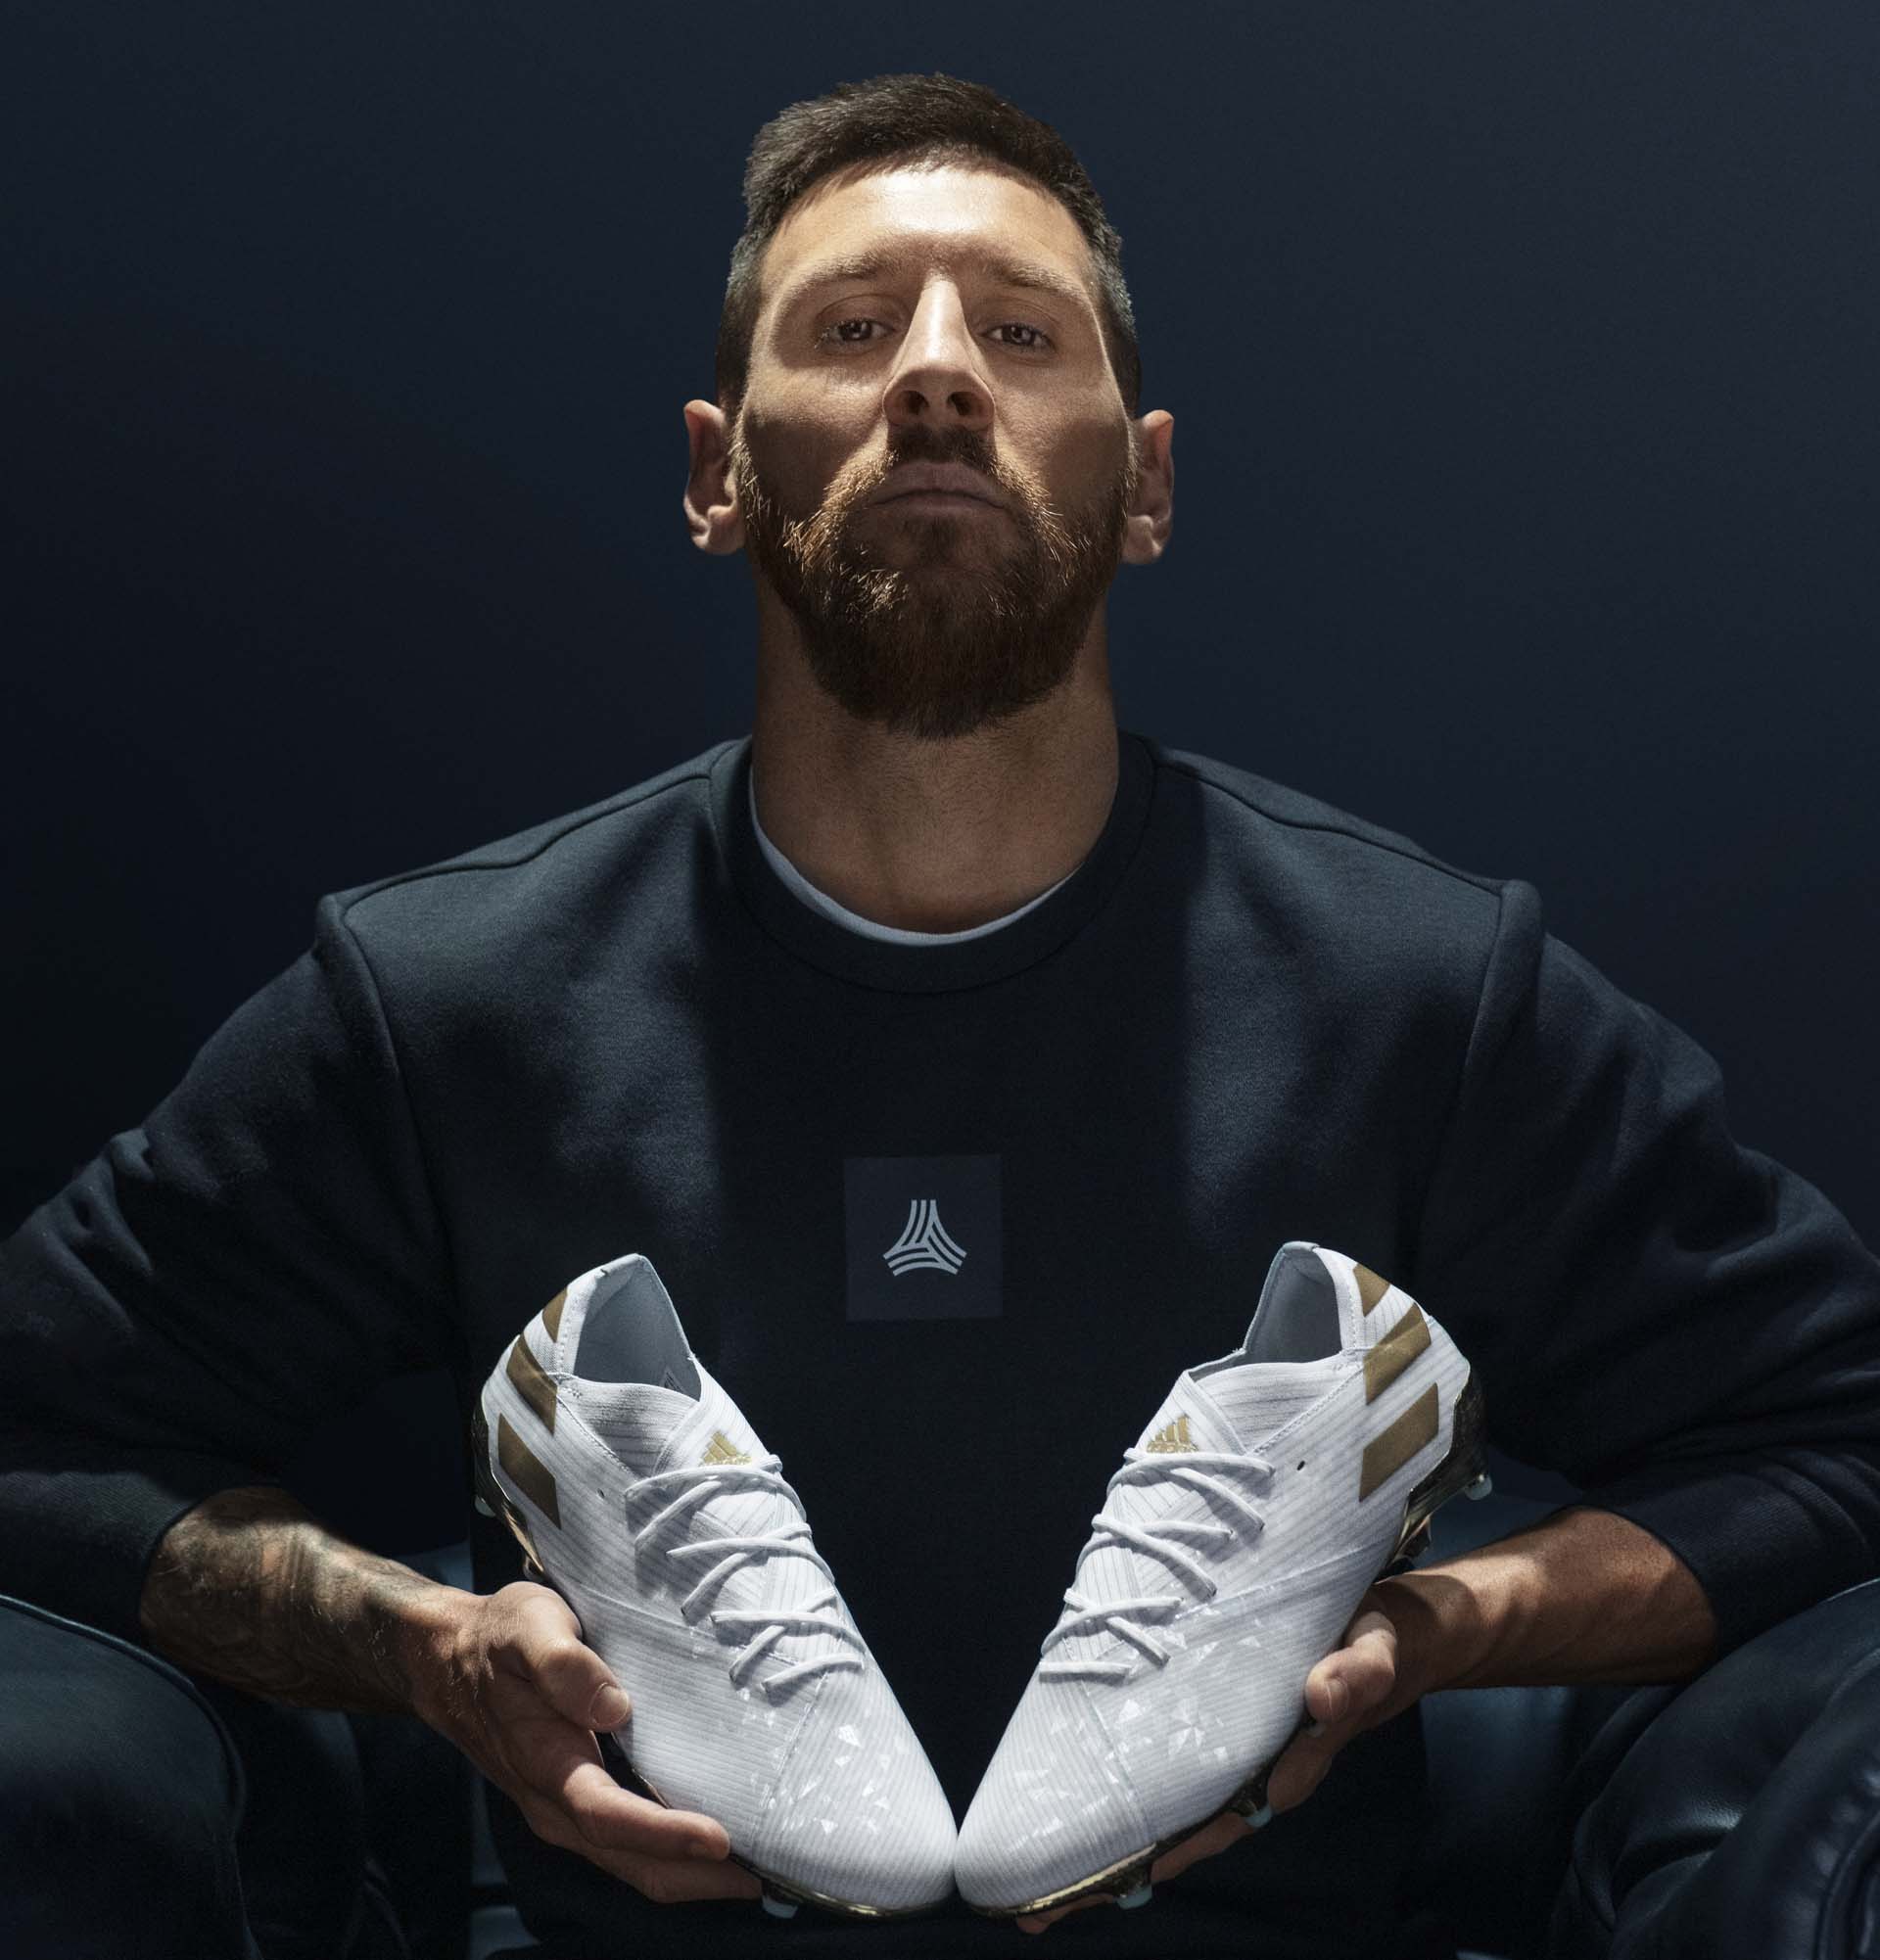 Messi thường sử dụng giày bóng đá của Adidas để thi đấu chuyên nghiệp